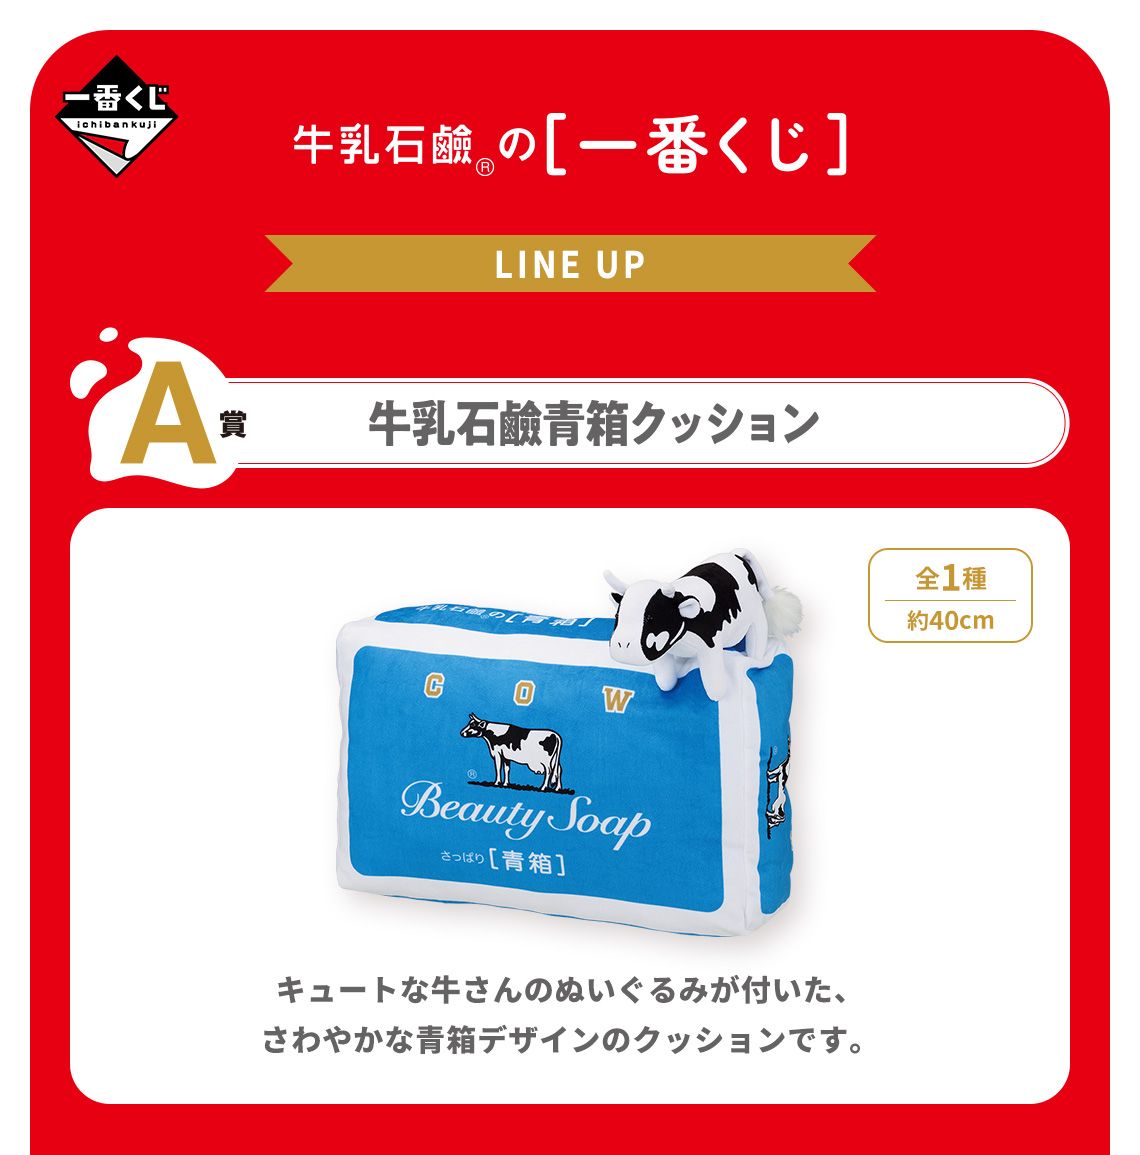 牛乳石鹸 個性あふれるグッズが当たる一番くじ 3月9日より発売!